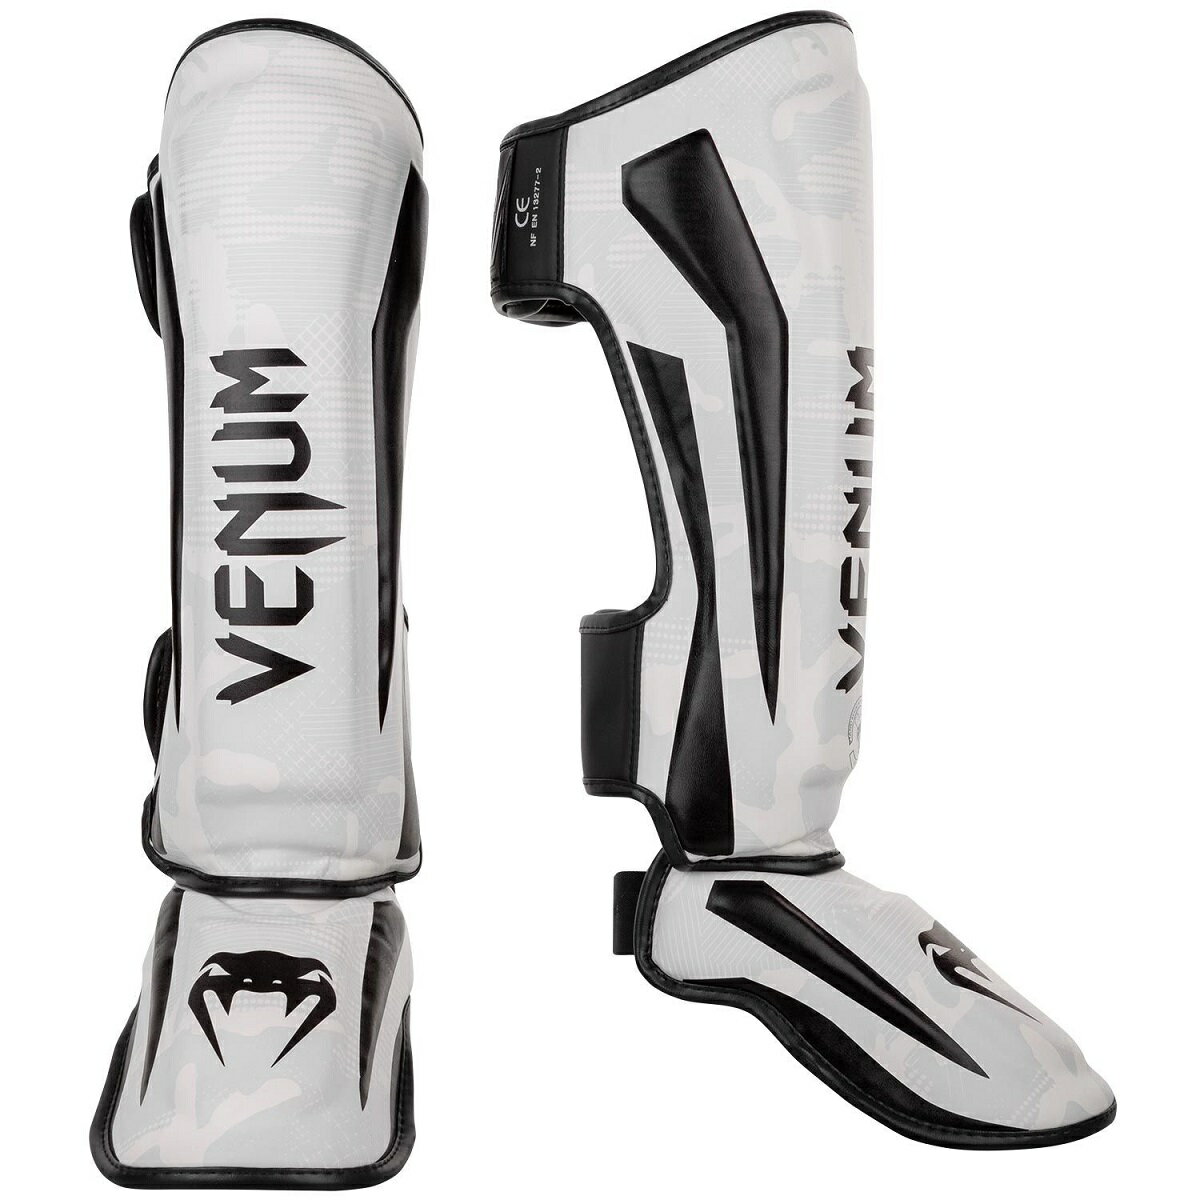 VENUM レッグガード ELITE SHIN GUARDS （ホワイト×カモ） VENUM-1394-053 //レガース キックボクシング 格闘技 防具 プロテクター 送料無料